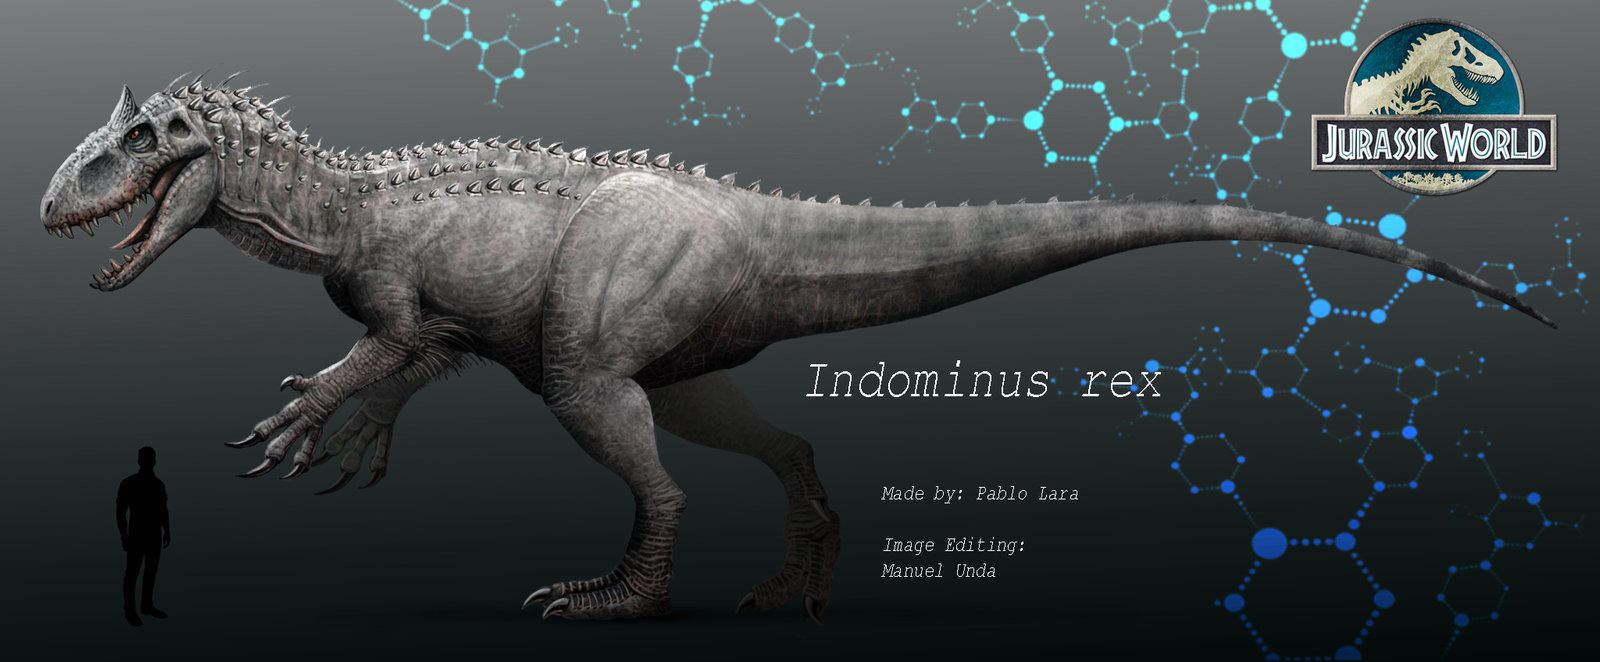 Free download Jurassic World Indominus rex